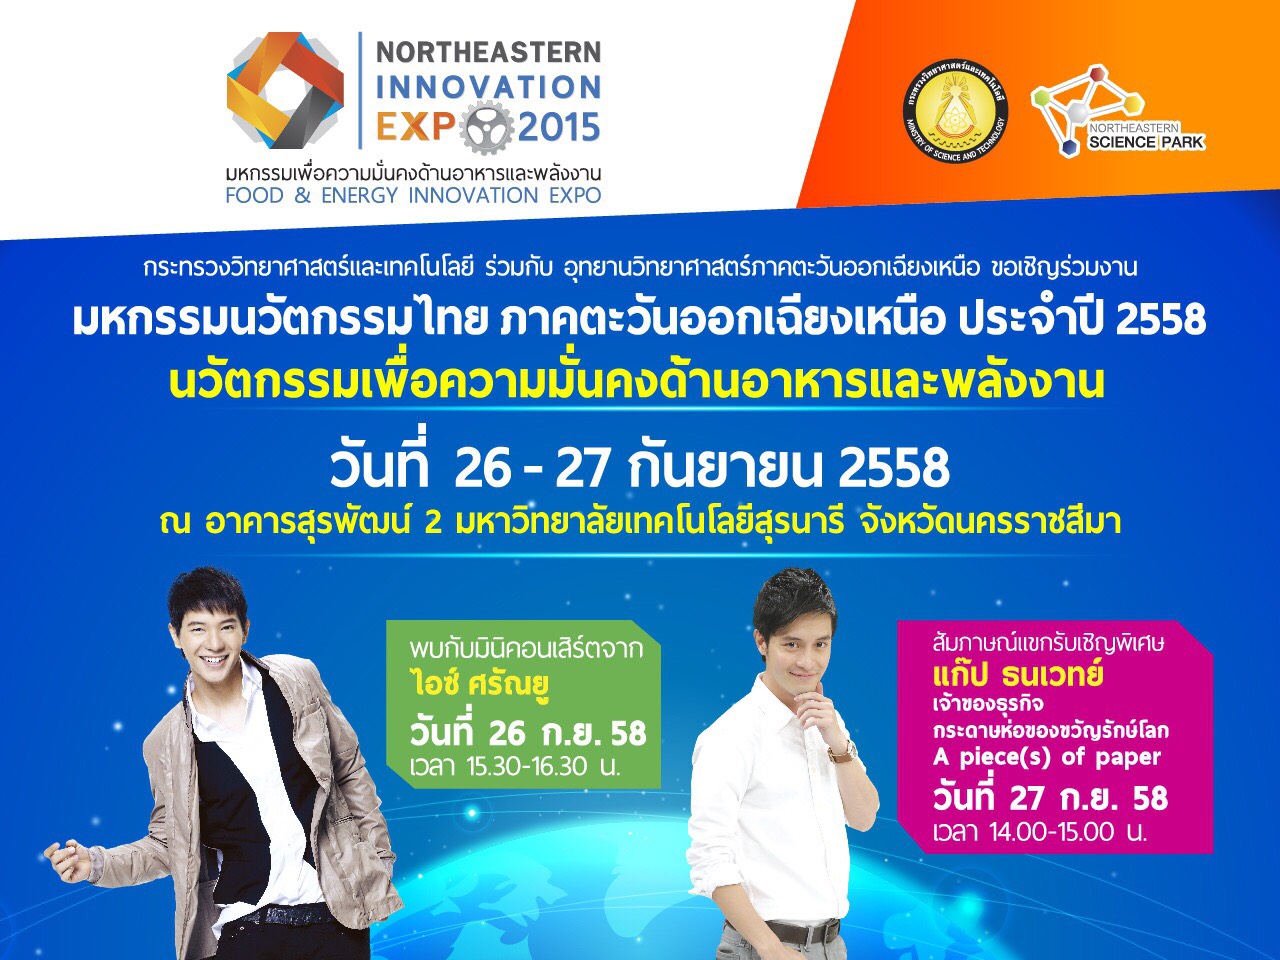 ขอเชิญชวนผู้สนใจเข้าร่วมงานมหกรรมนวัตกรรมไทย ภาคตะวันออกเฉียงเหนือ ประจำปี 2558  